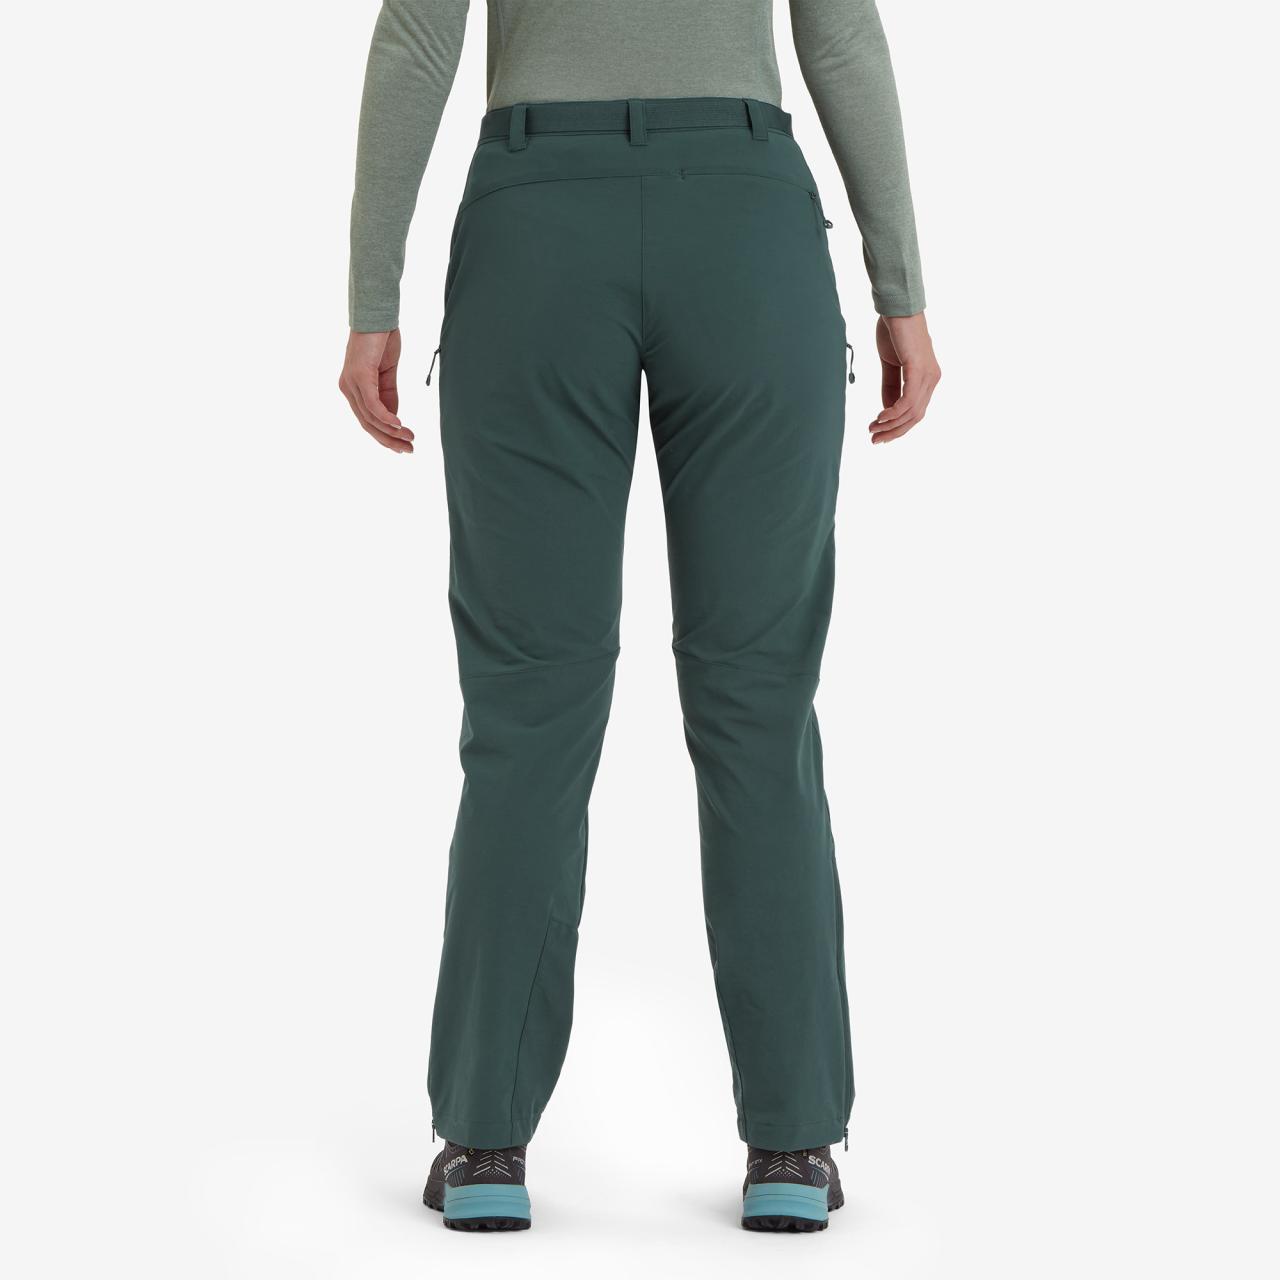 FEM TERRA STRETCH PANTS-R LEG-DEEP FOREST-UK16/XL dámské kalhotytmavě zelená